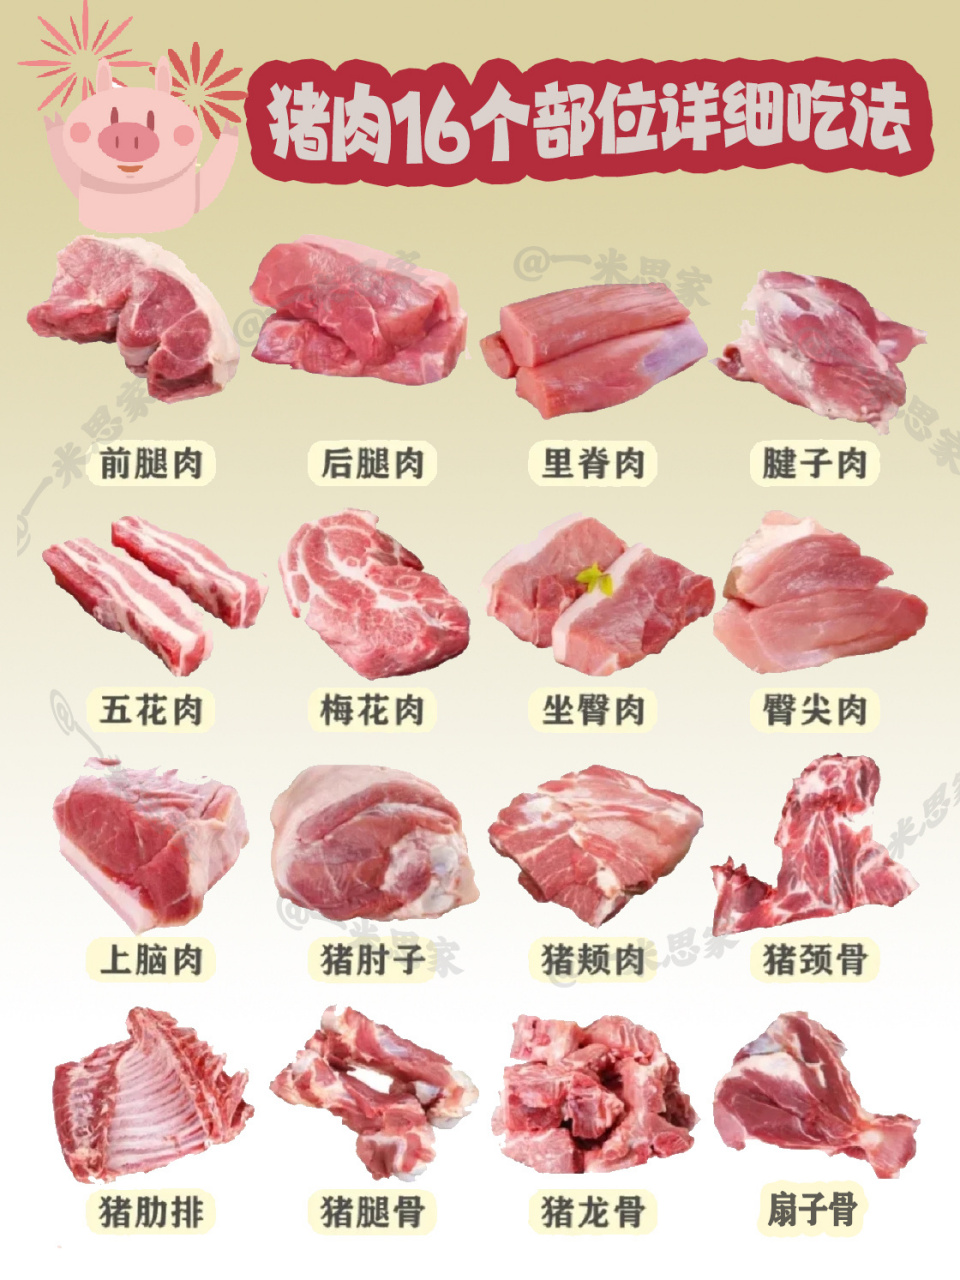 猪肉16个部位详细讲解,买猪肉再也不迷糊了 是不是经常去到菜市场不